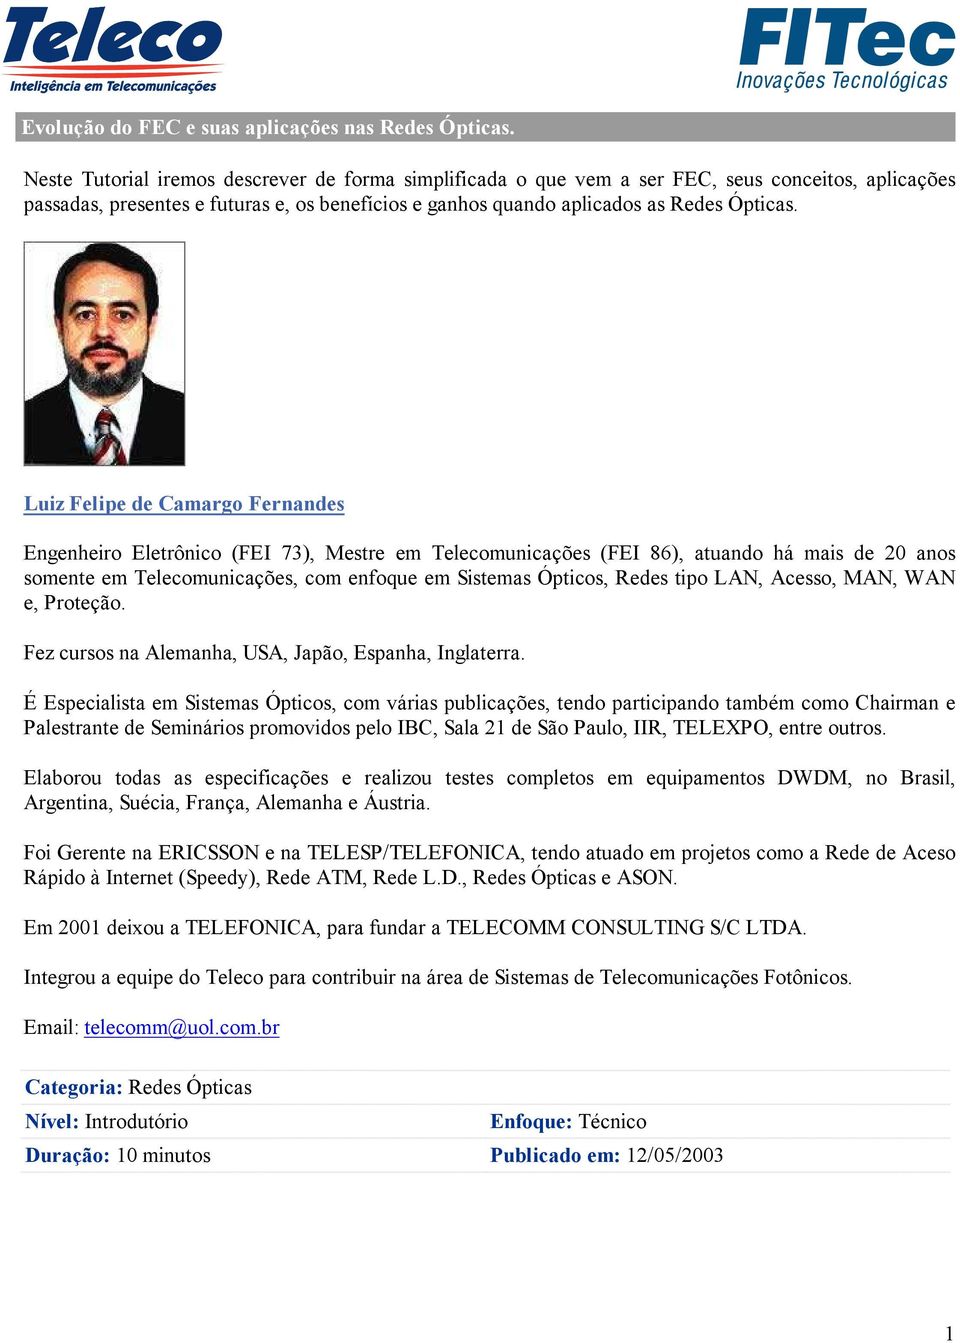 Luiz Felipe de Camargo Fernandes Engenheiro Eletrônico (FEI 73), Mestre em Telecomunicações (FEI 86), atuando há mais de 20 anos somente em Telecomunicações, com enfoque em Sistemas Ópticos, Redes